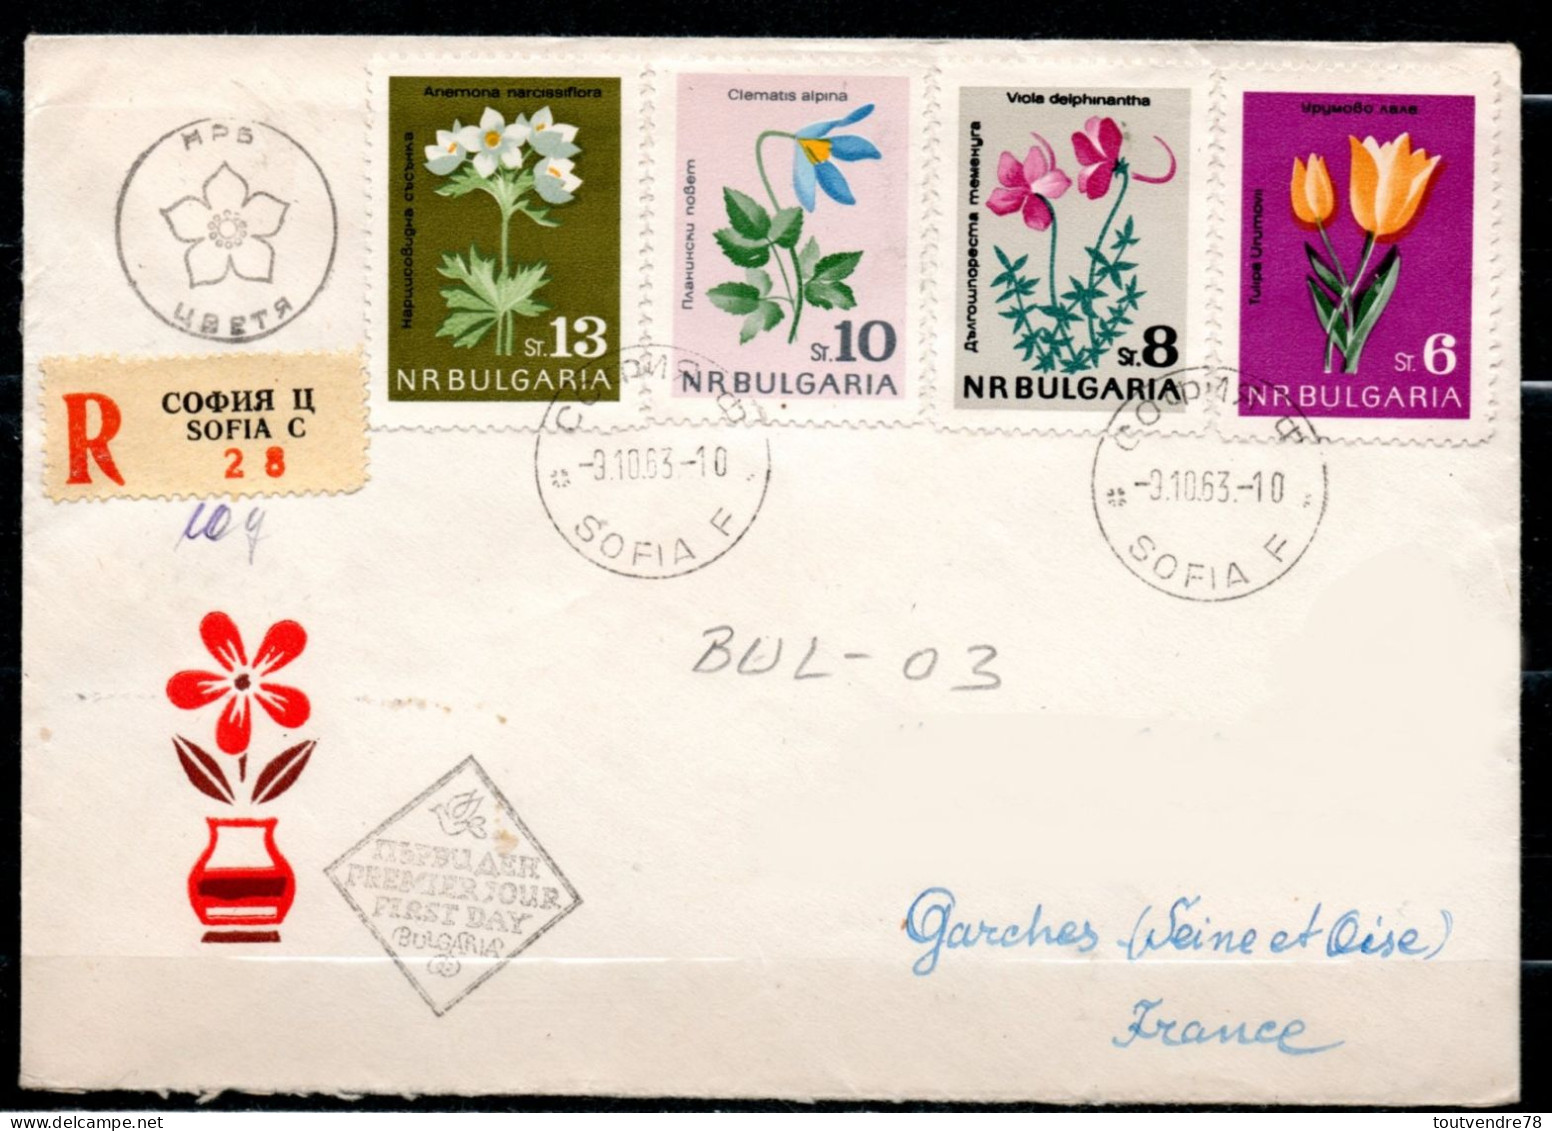 BUL-03 : Bulgarie > France LR > FDC Série Fleurs 1963 - FDC